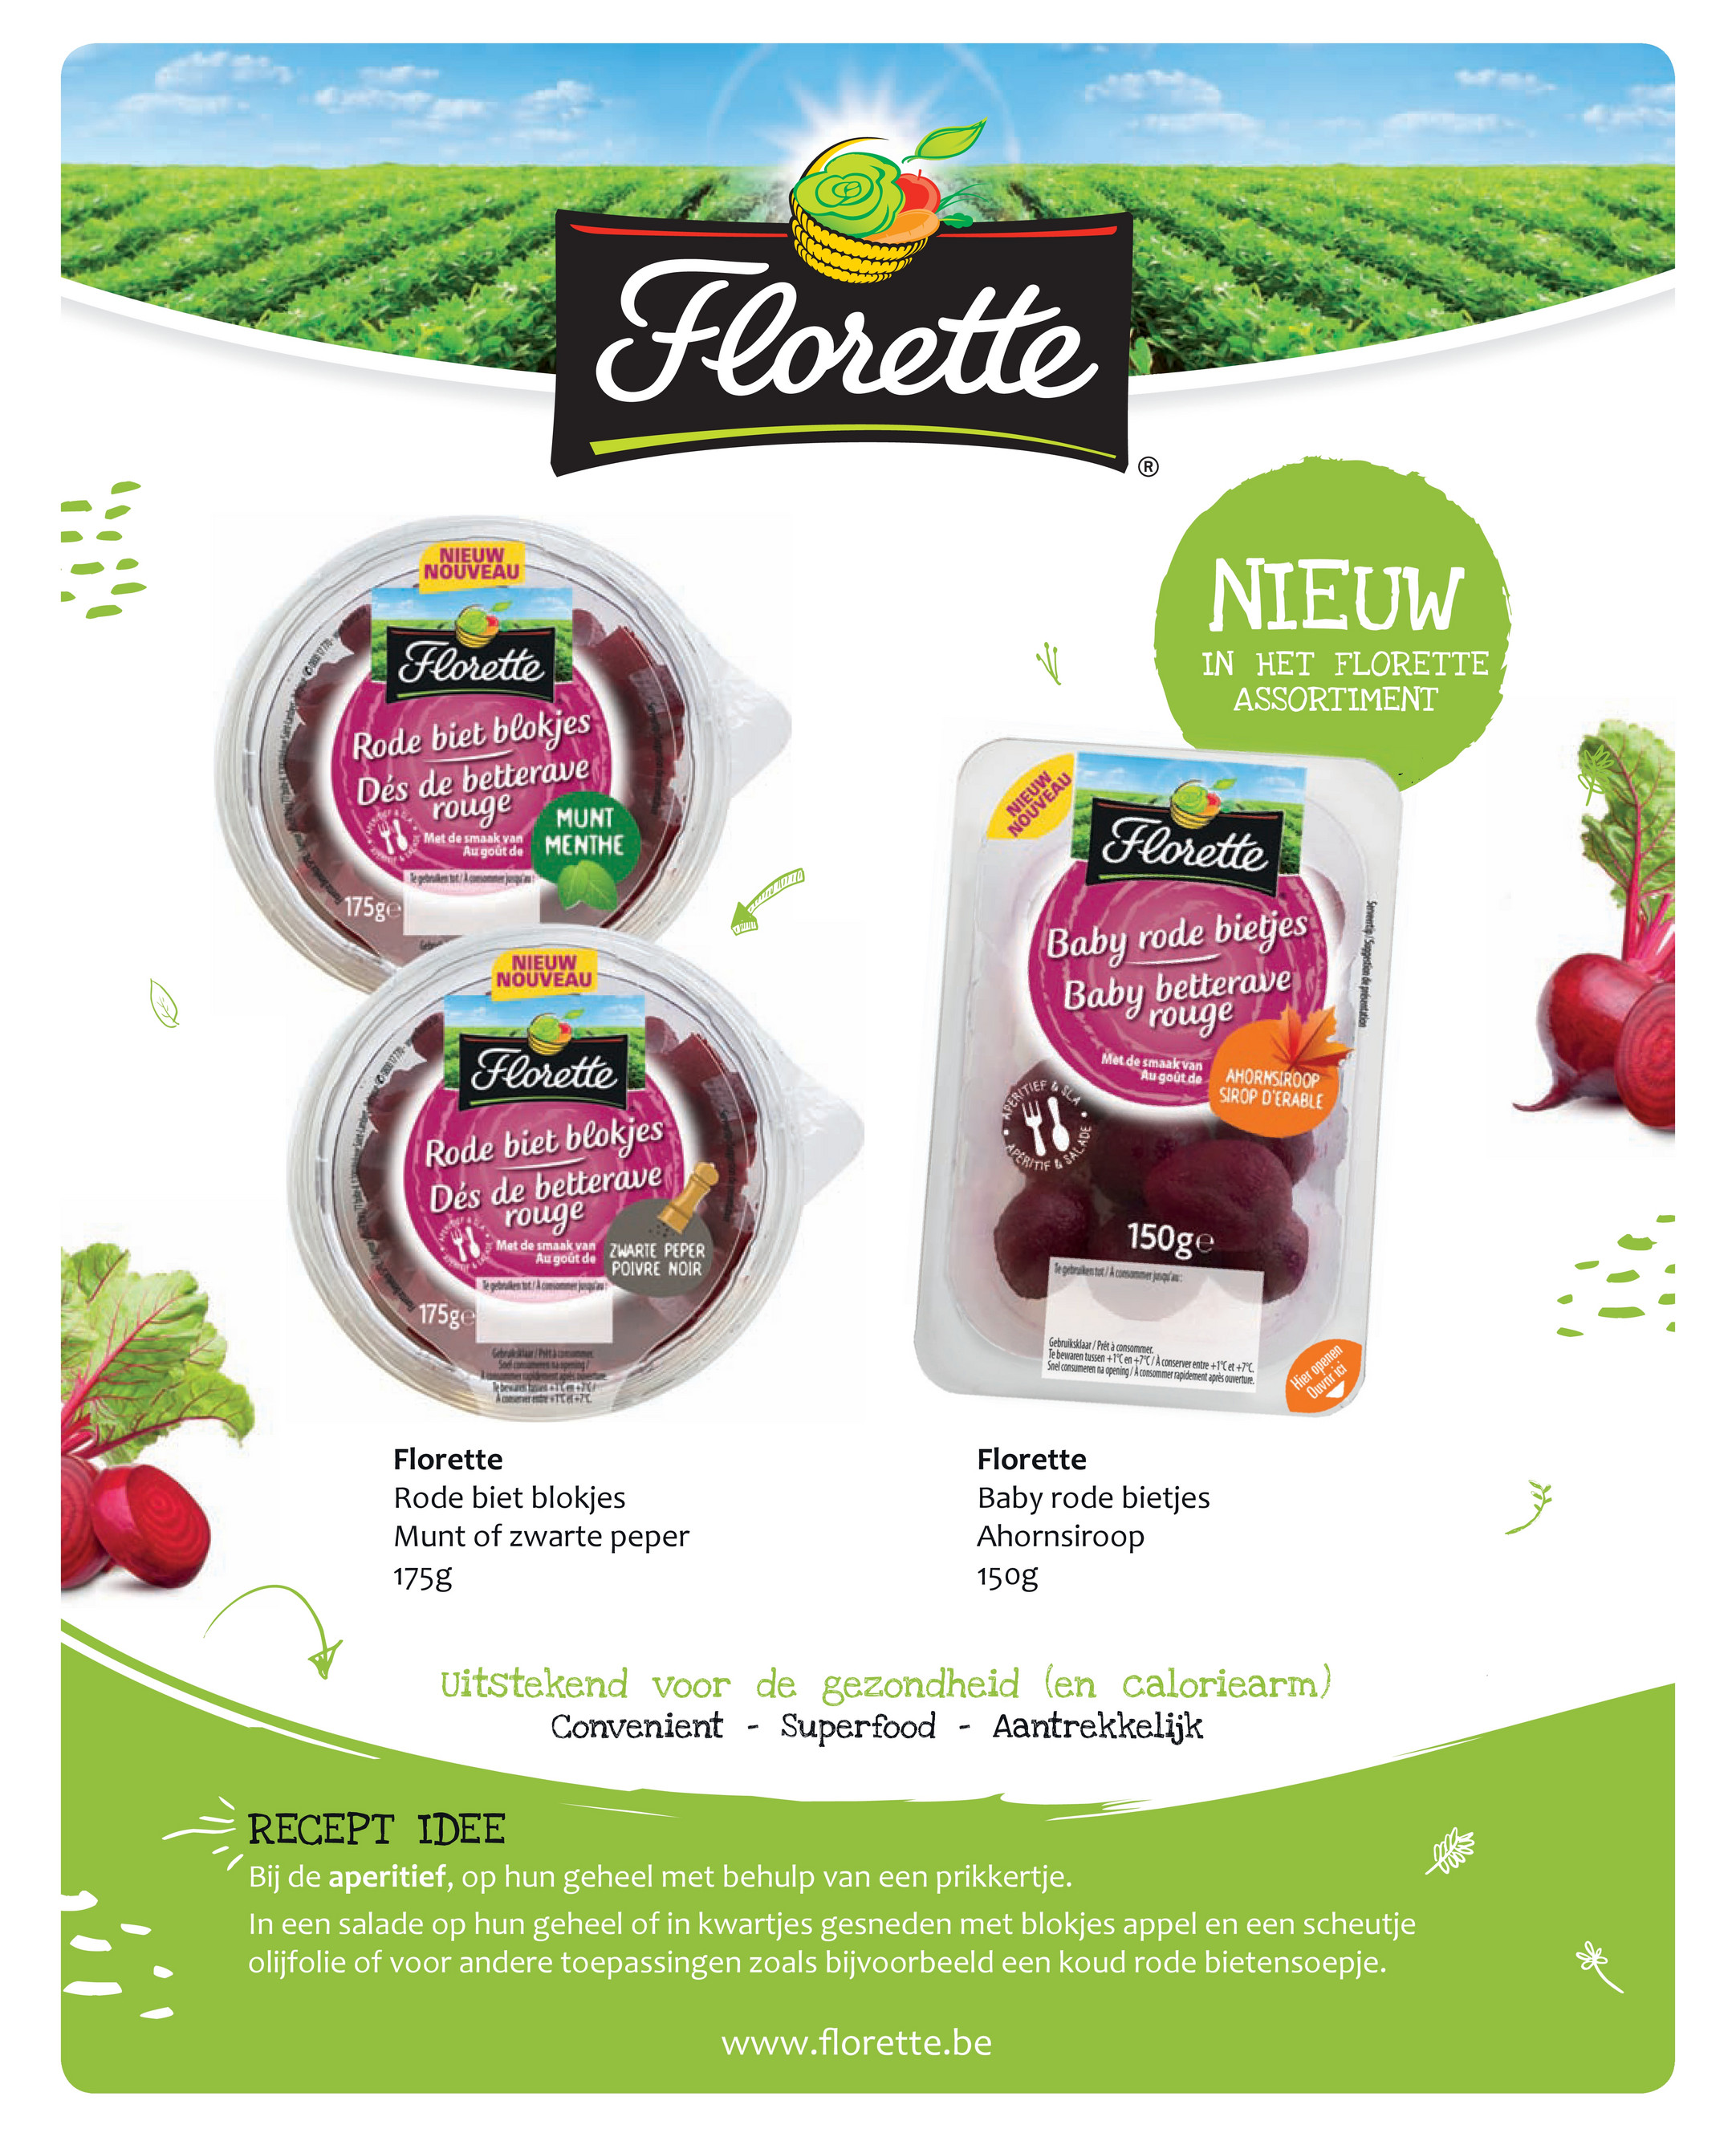 Florette the label